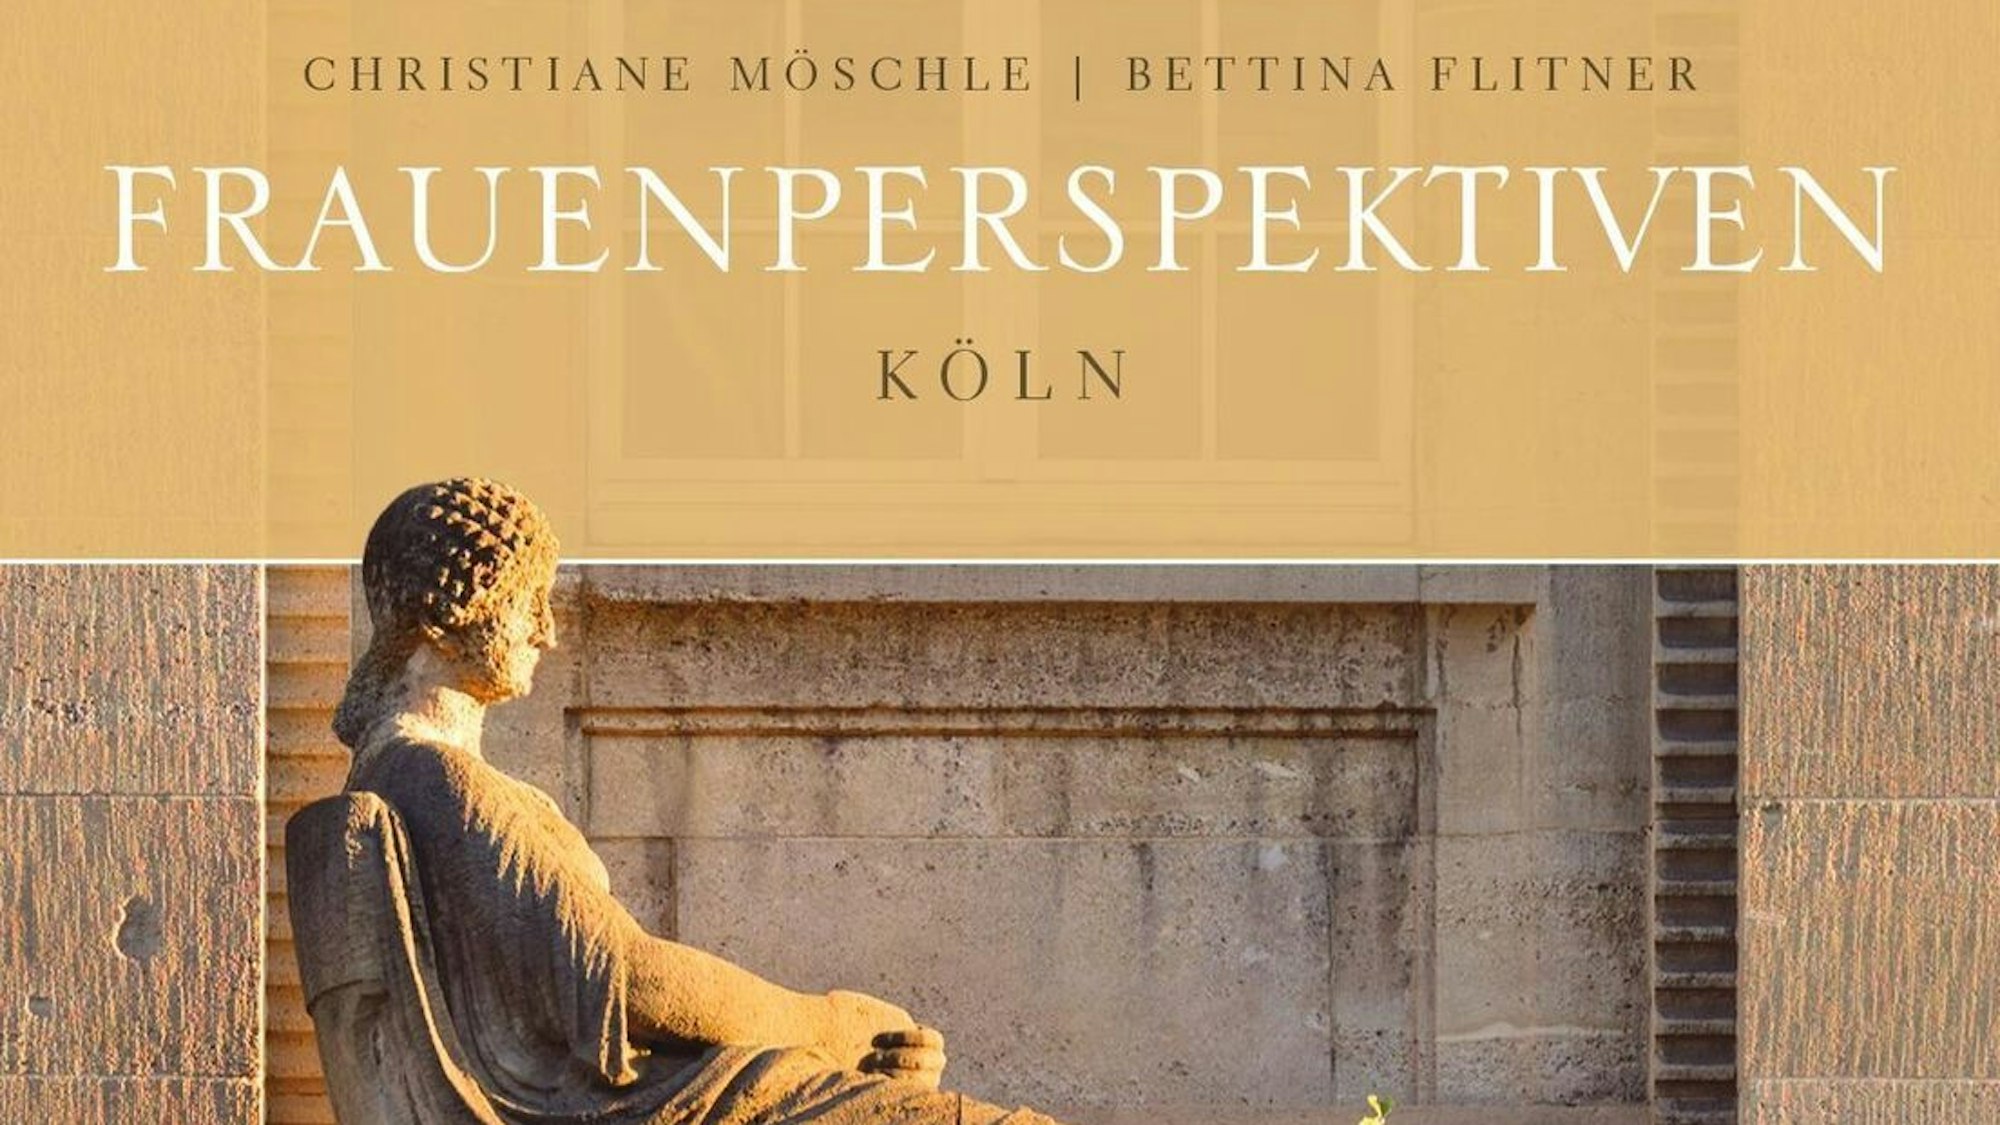 Buchcover von „Frauenperspektiven Köln“. Eine Statue , sie sitzt seitlich zum Betrachter auf einem Stuhl, darüber der Buchtitel und die Autorinnennamen.